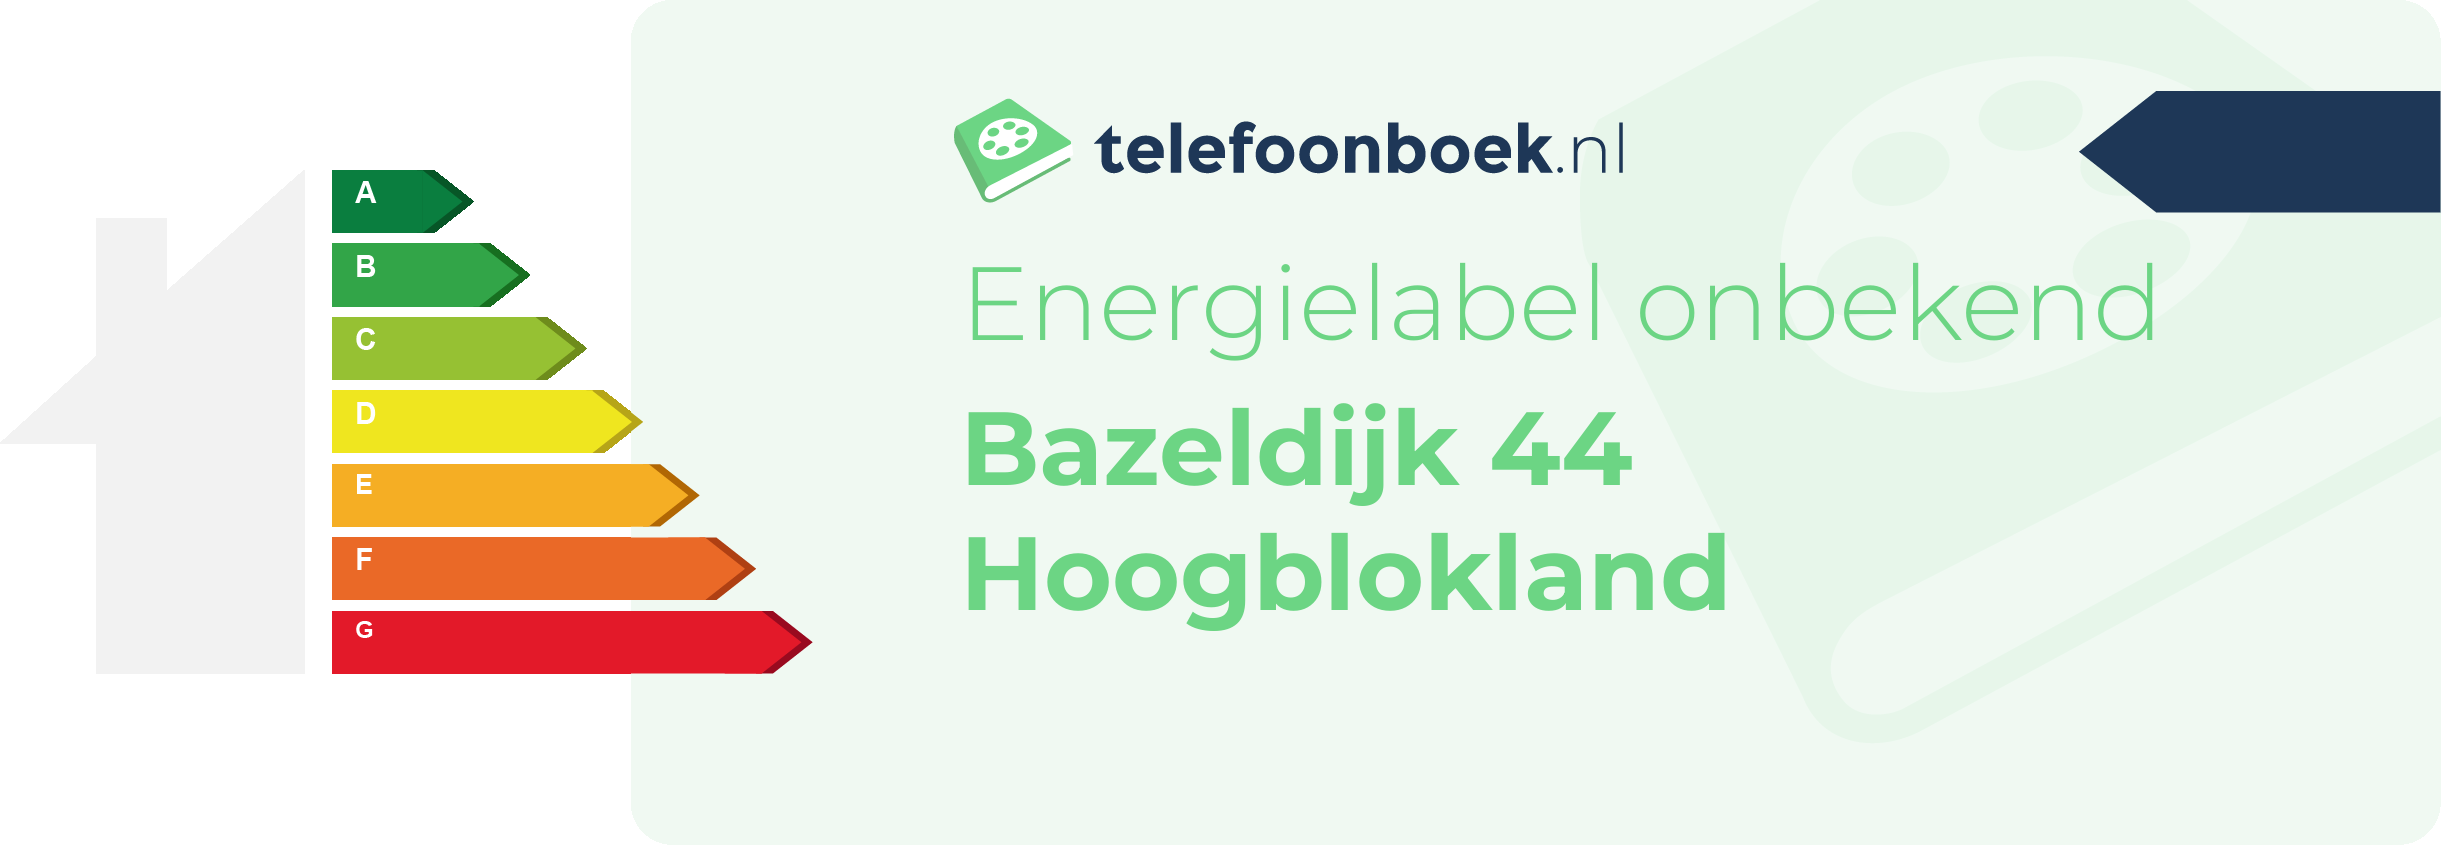 Energielabel Bazeldijk 44 Hoogblokland